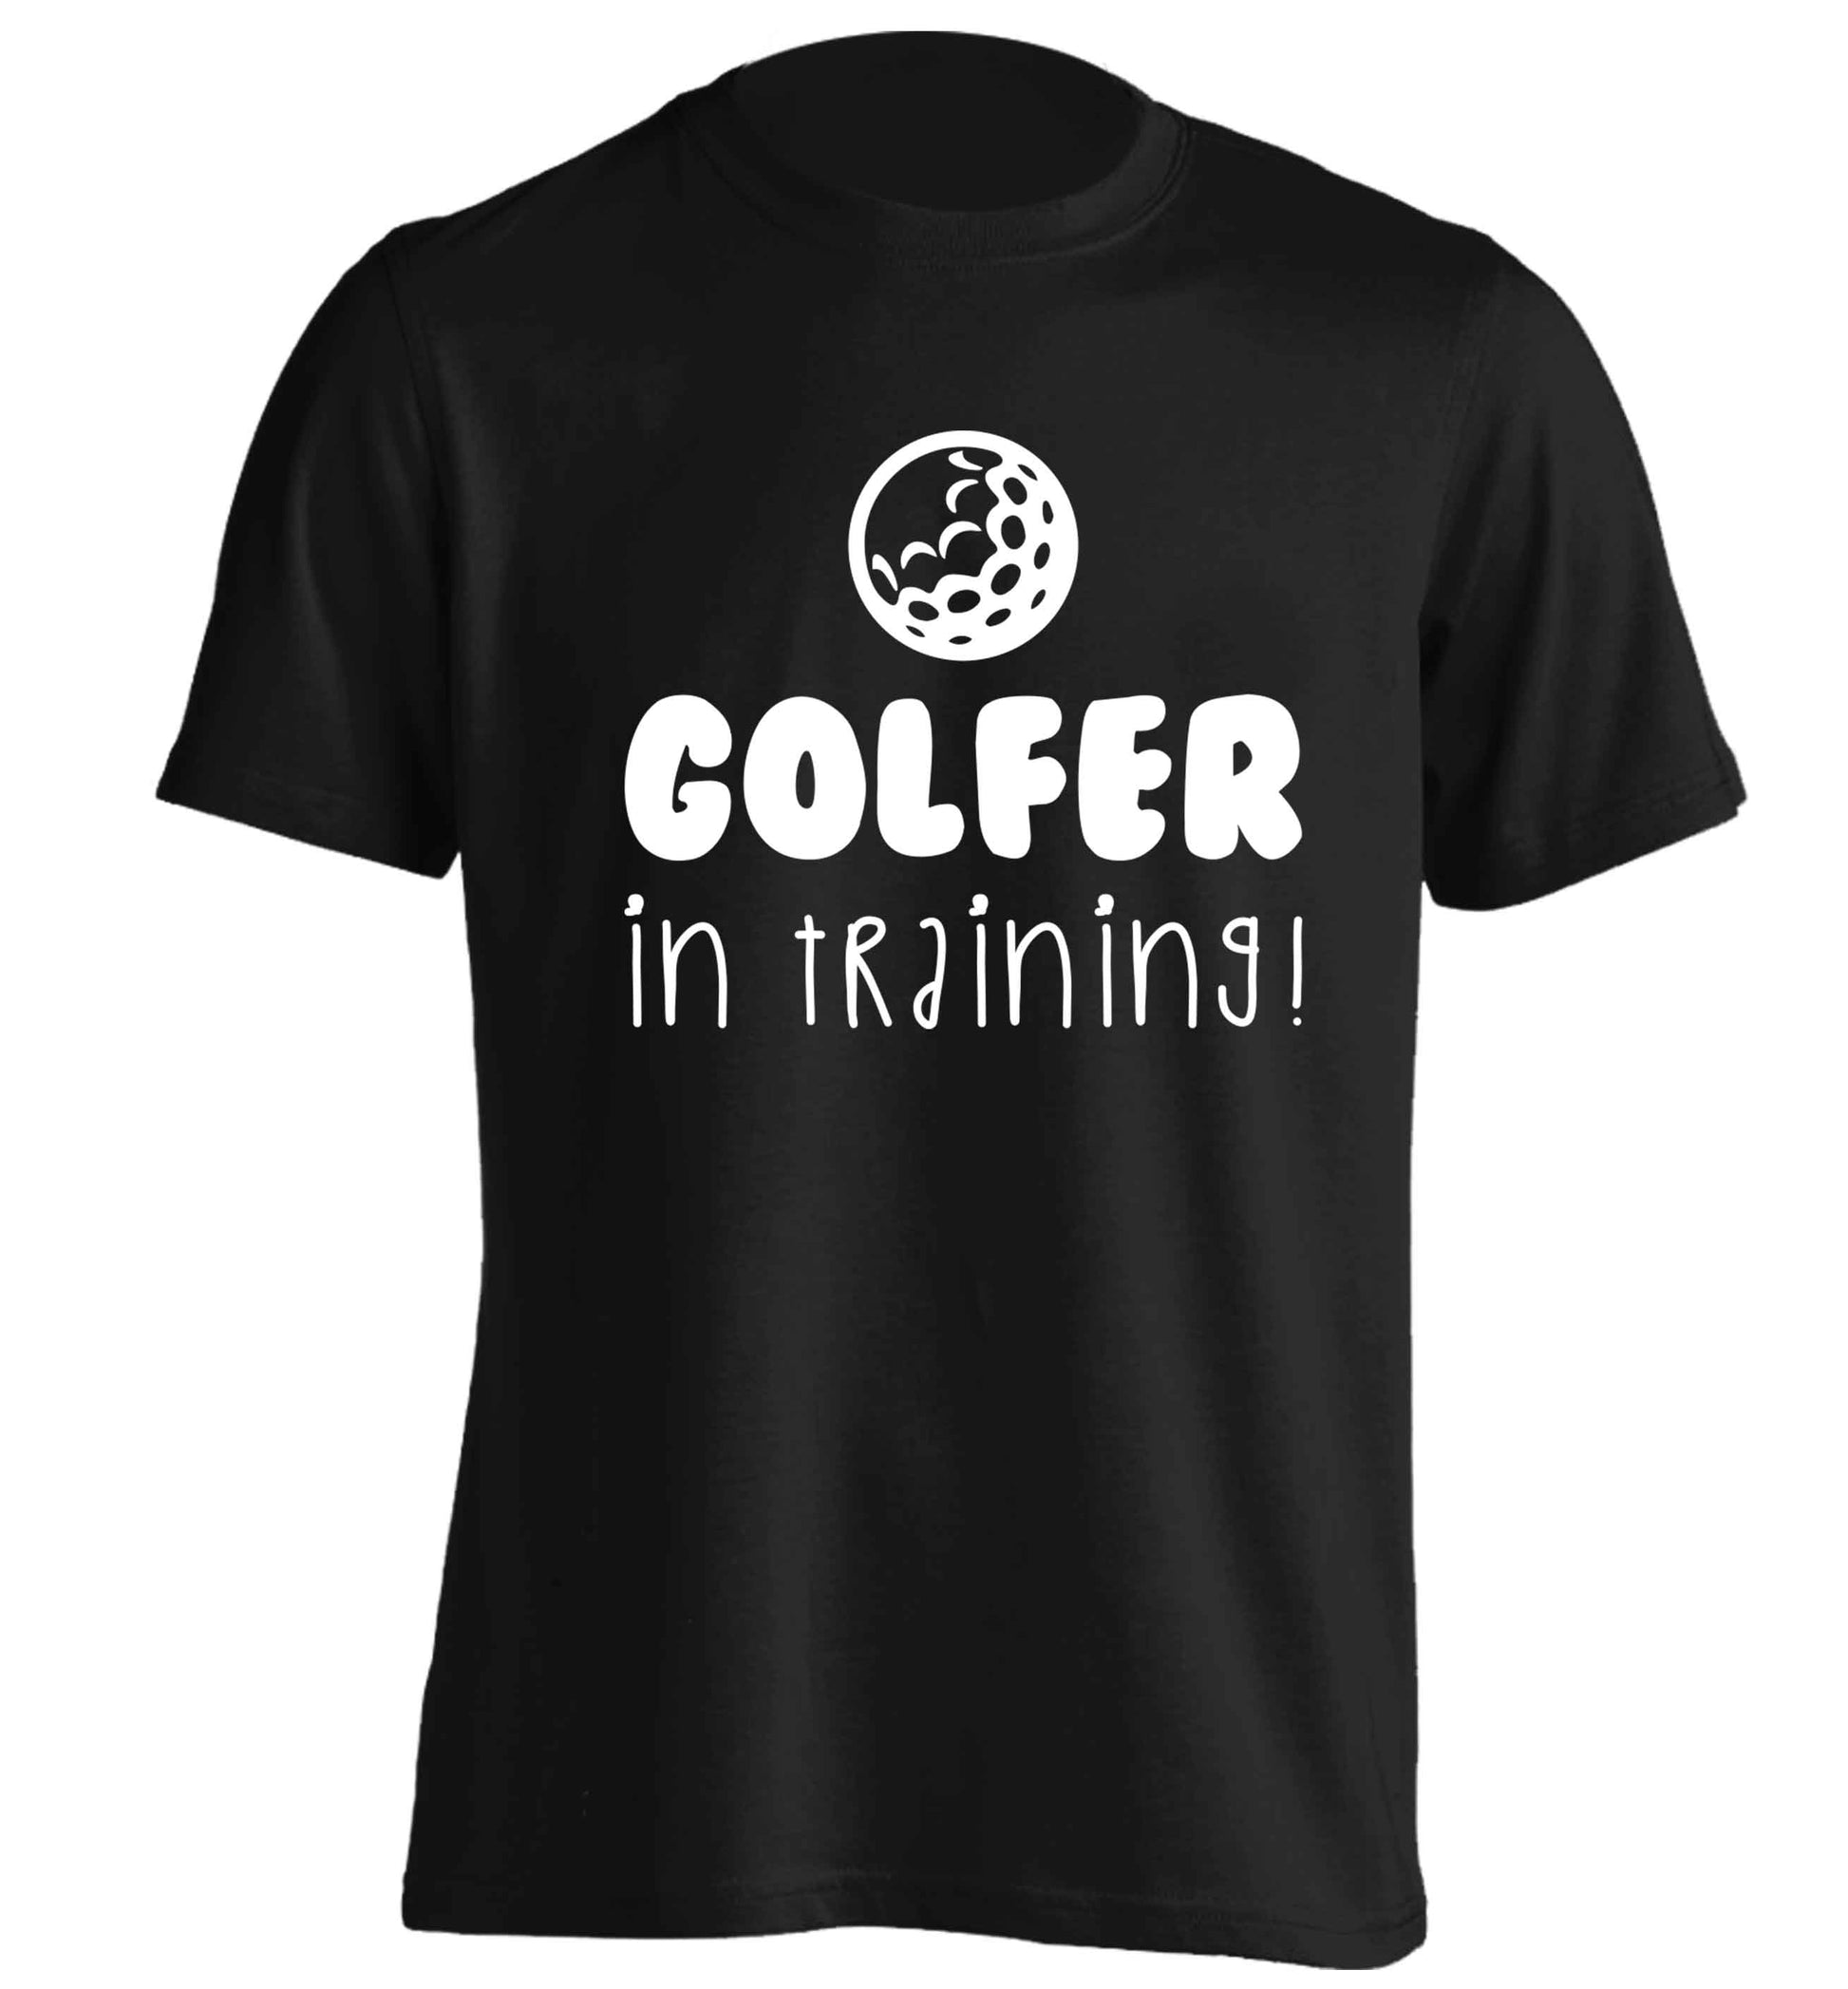 Golfer in training adults unisex black Tshirt 2XL